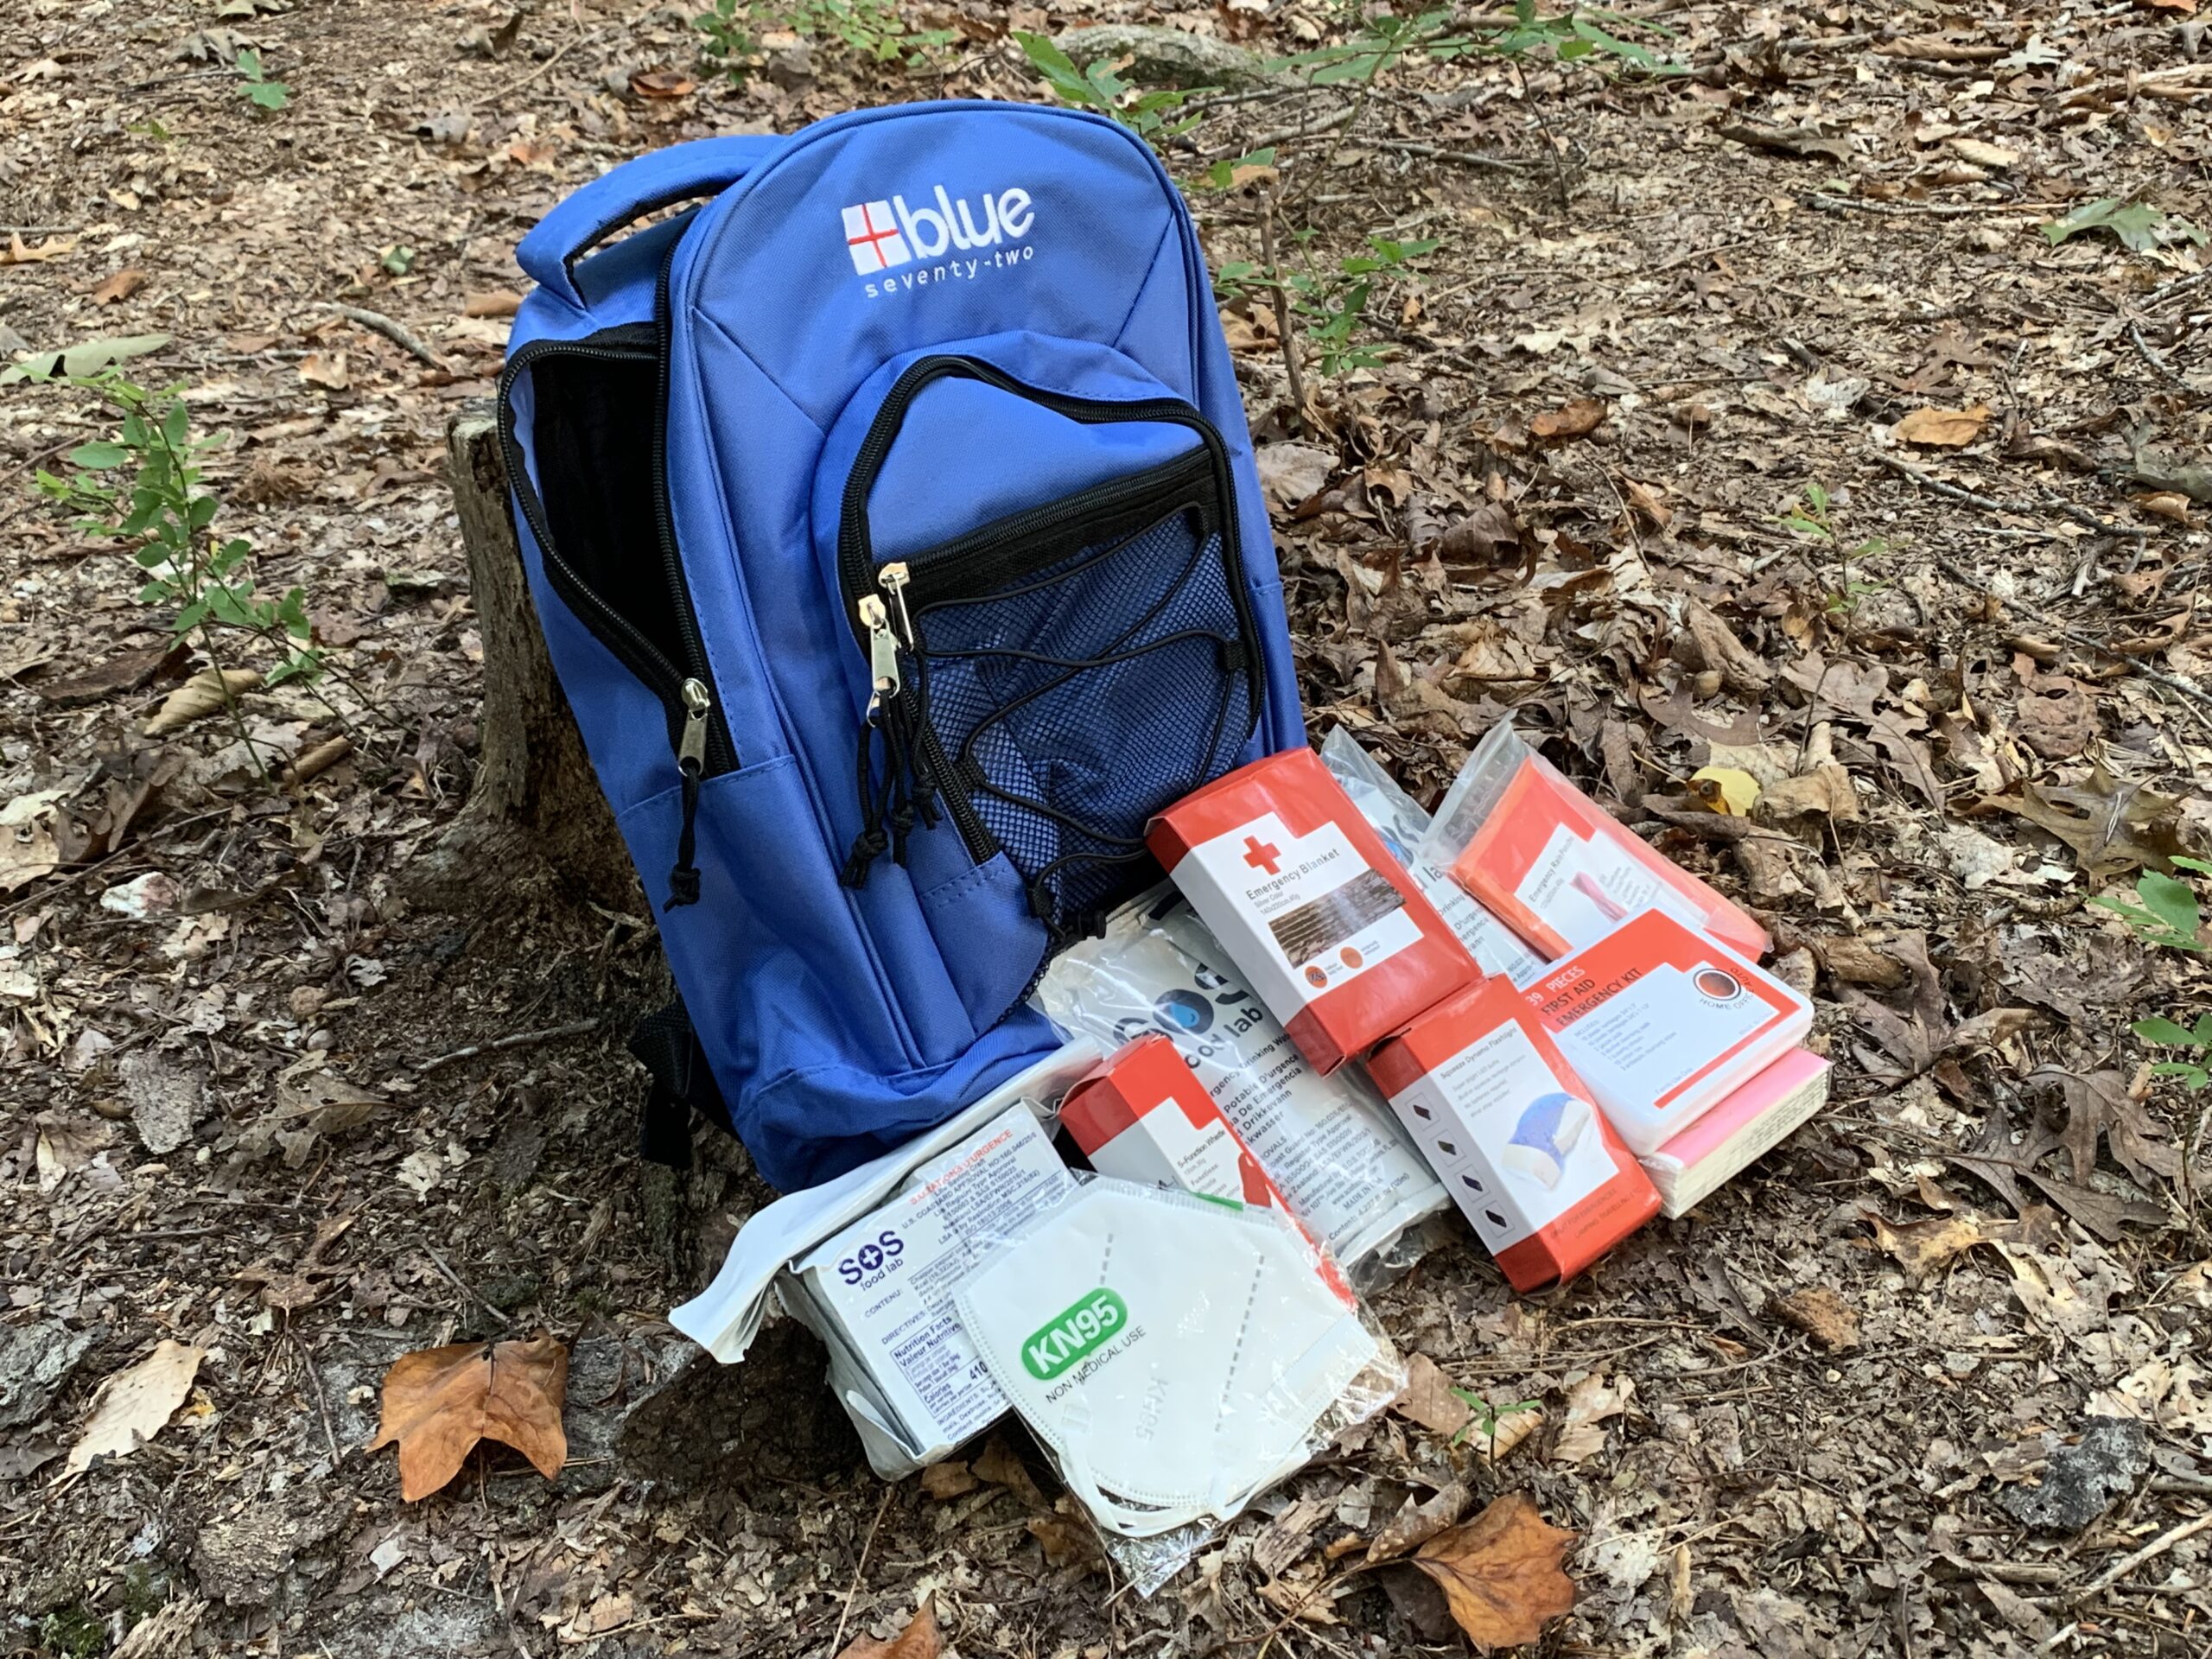 Blue coolers backpack survival kit